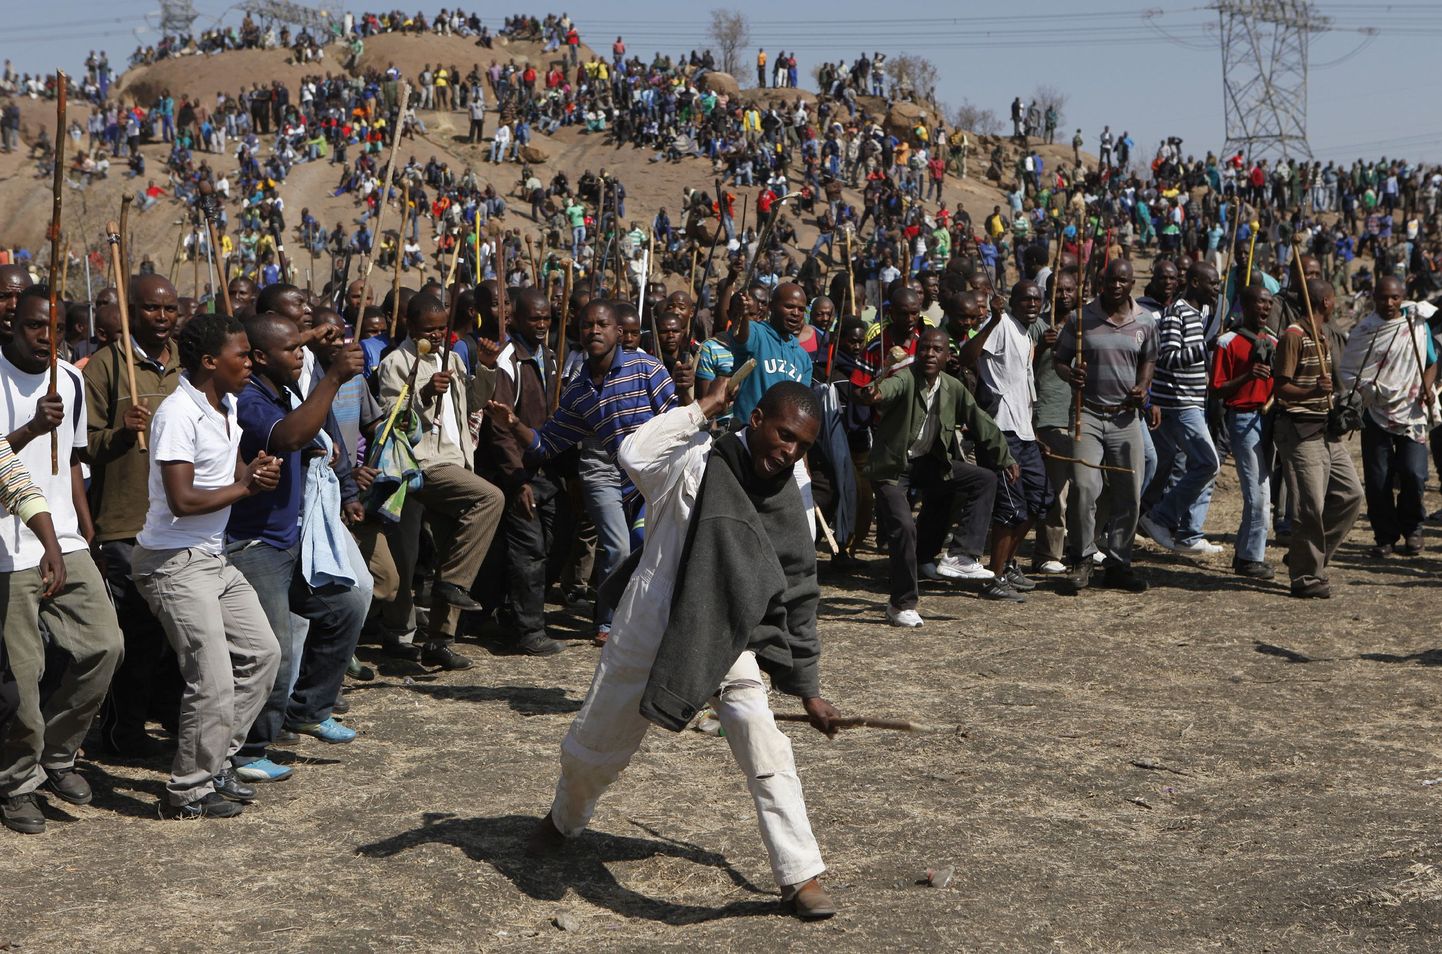 Lõuna-Aafrika Vabariigis protesteerivad kaevandustöölised.